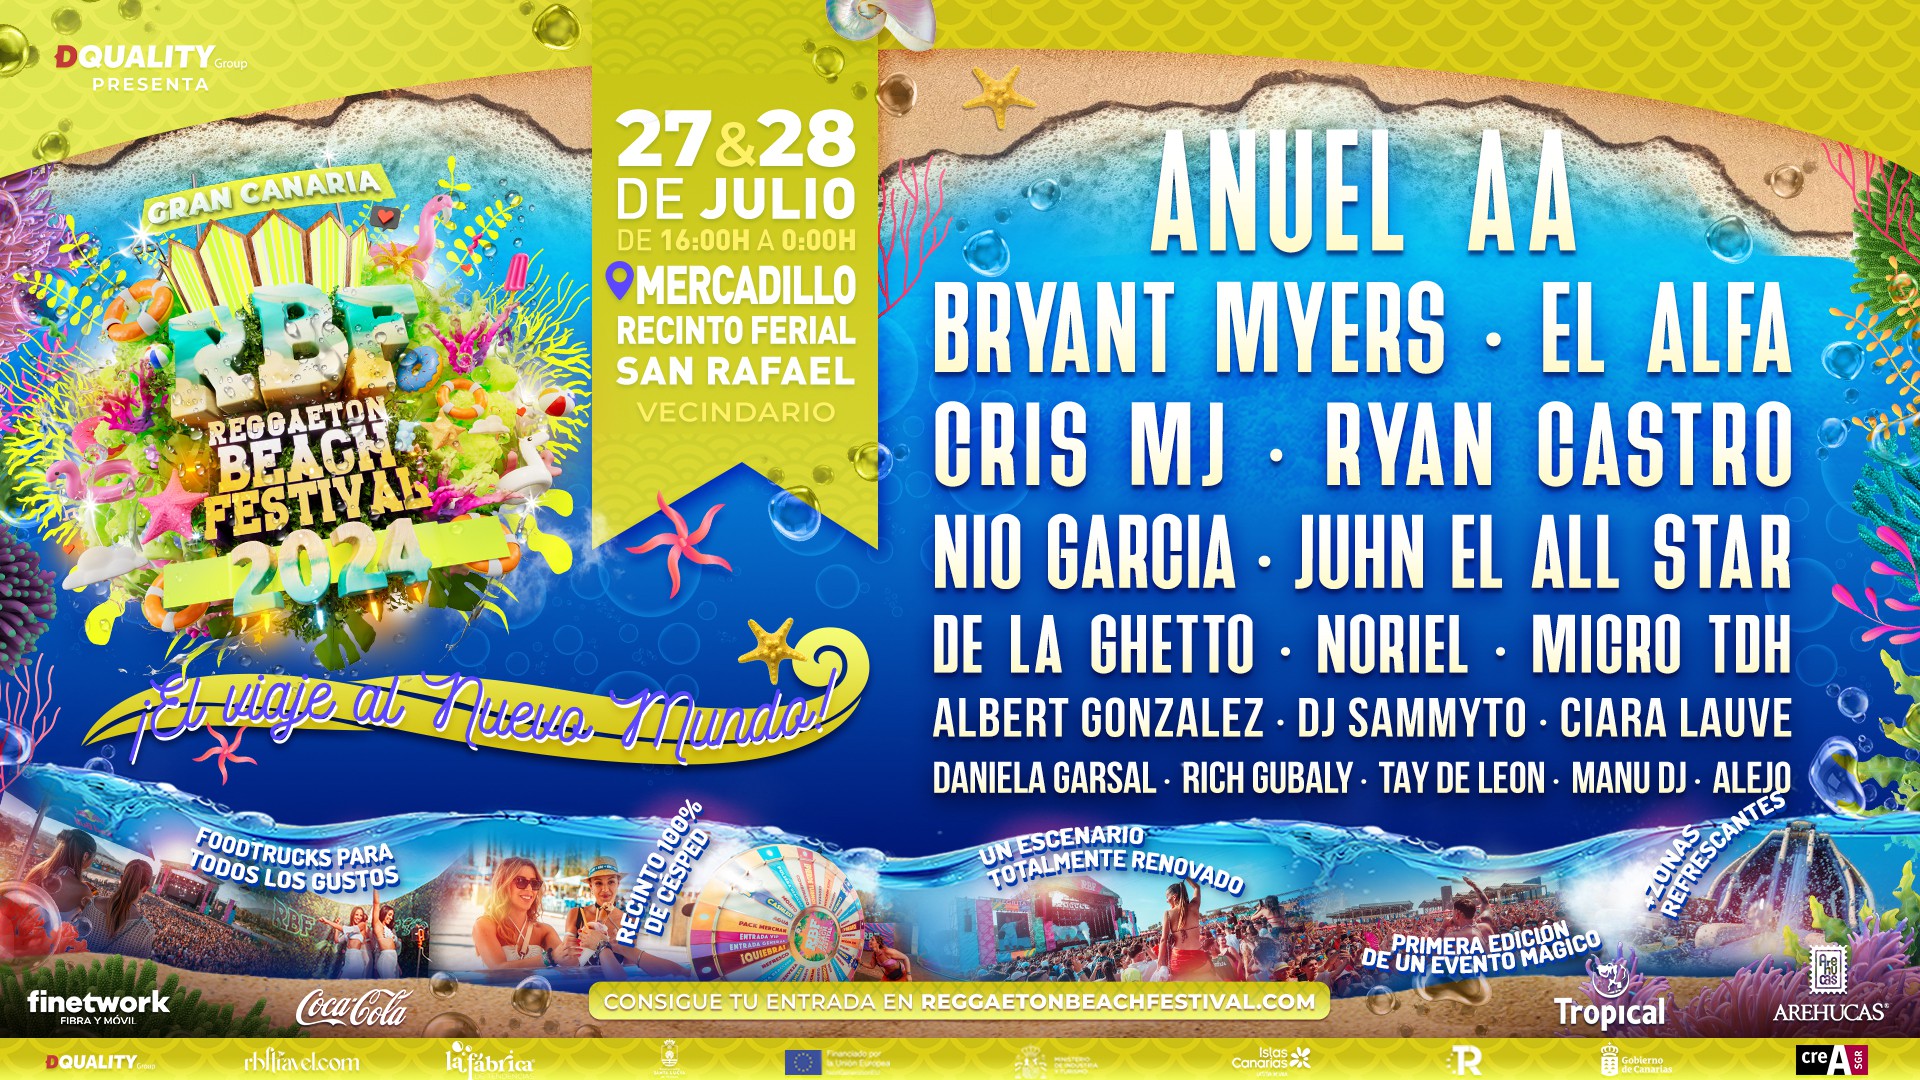 Reggaeton Beach Festival Gran Canaria